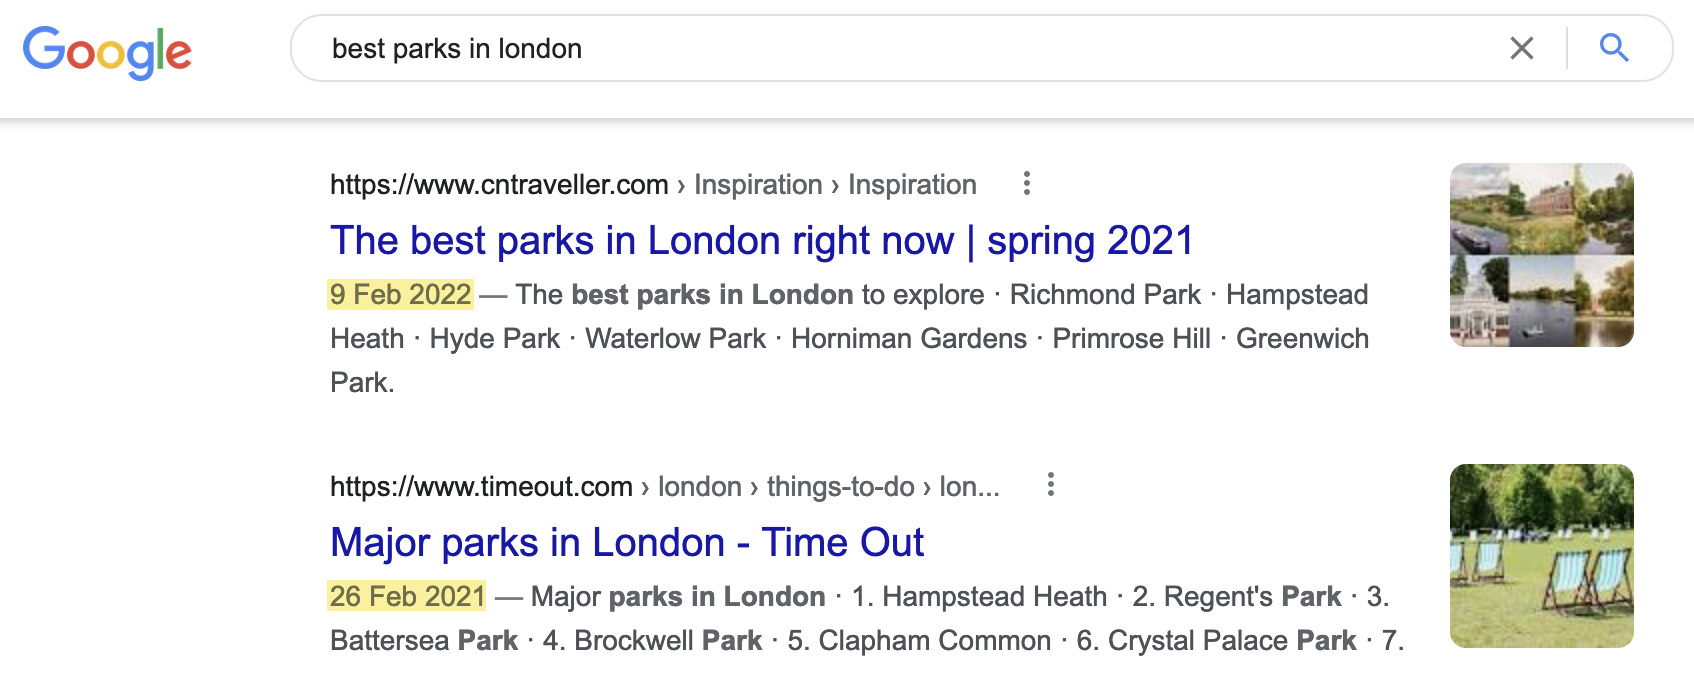 “伦敦最佳公园”的评选结果并不是最新的  